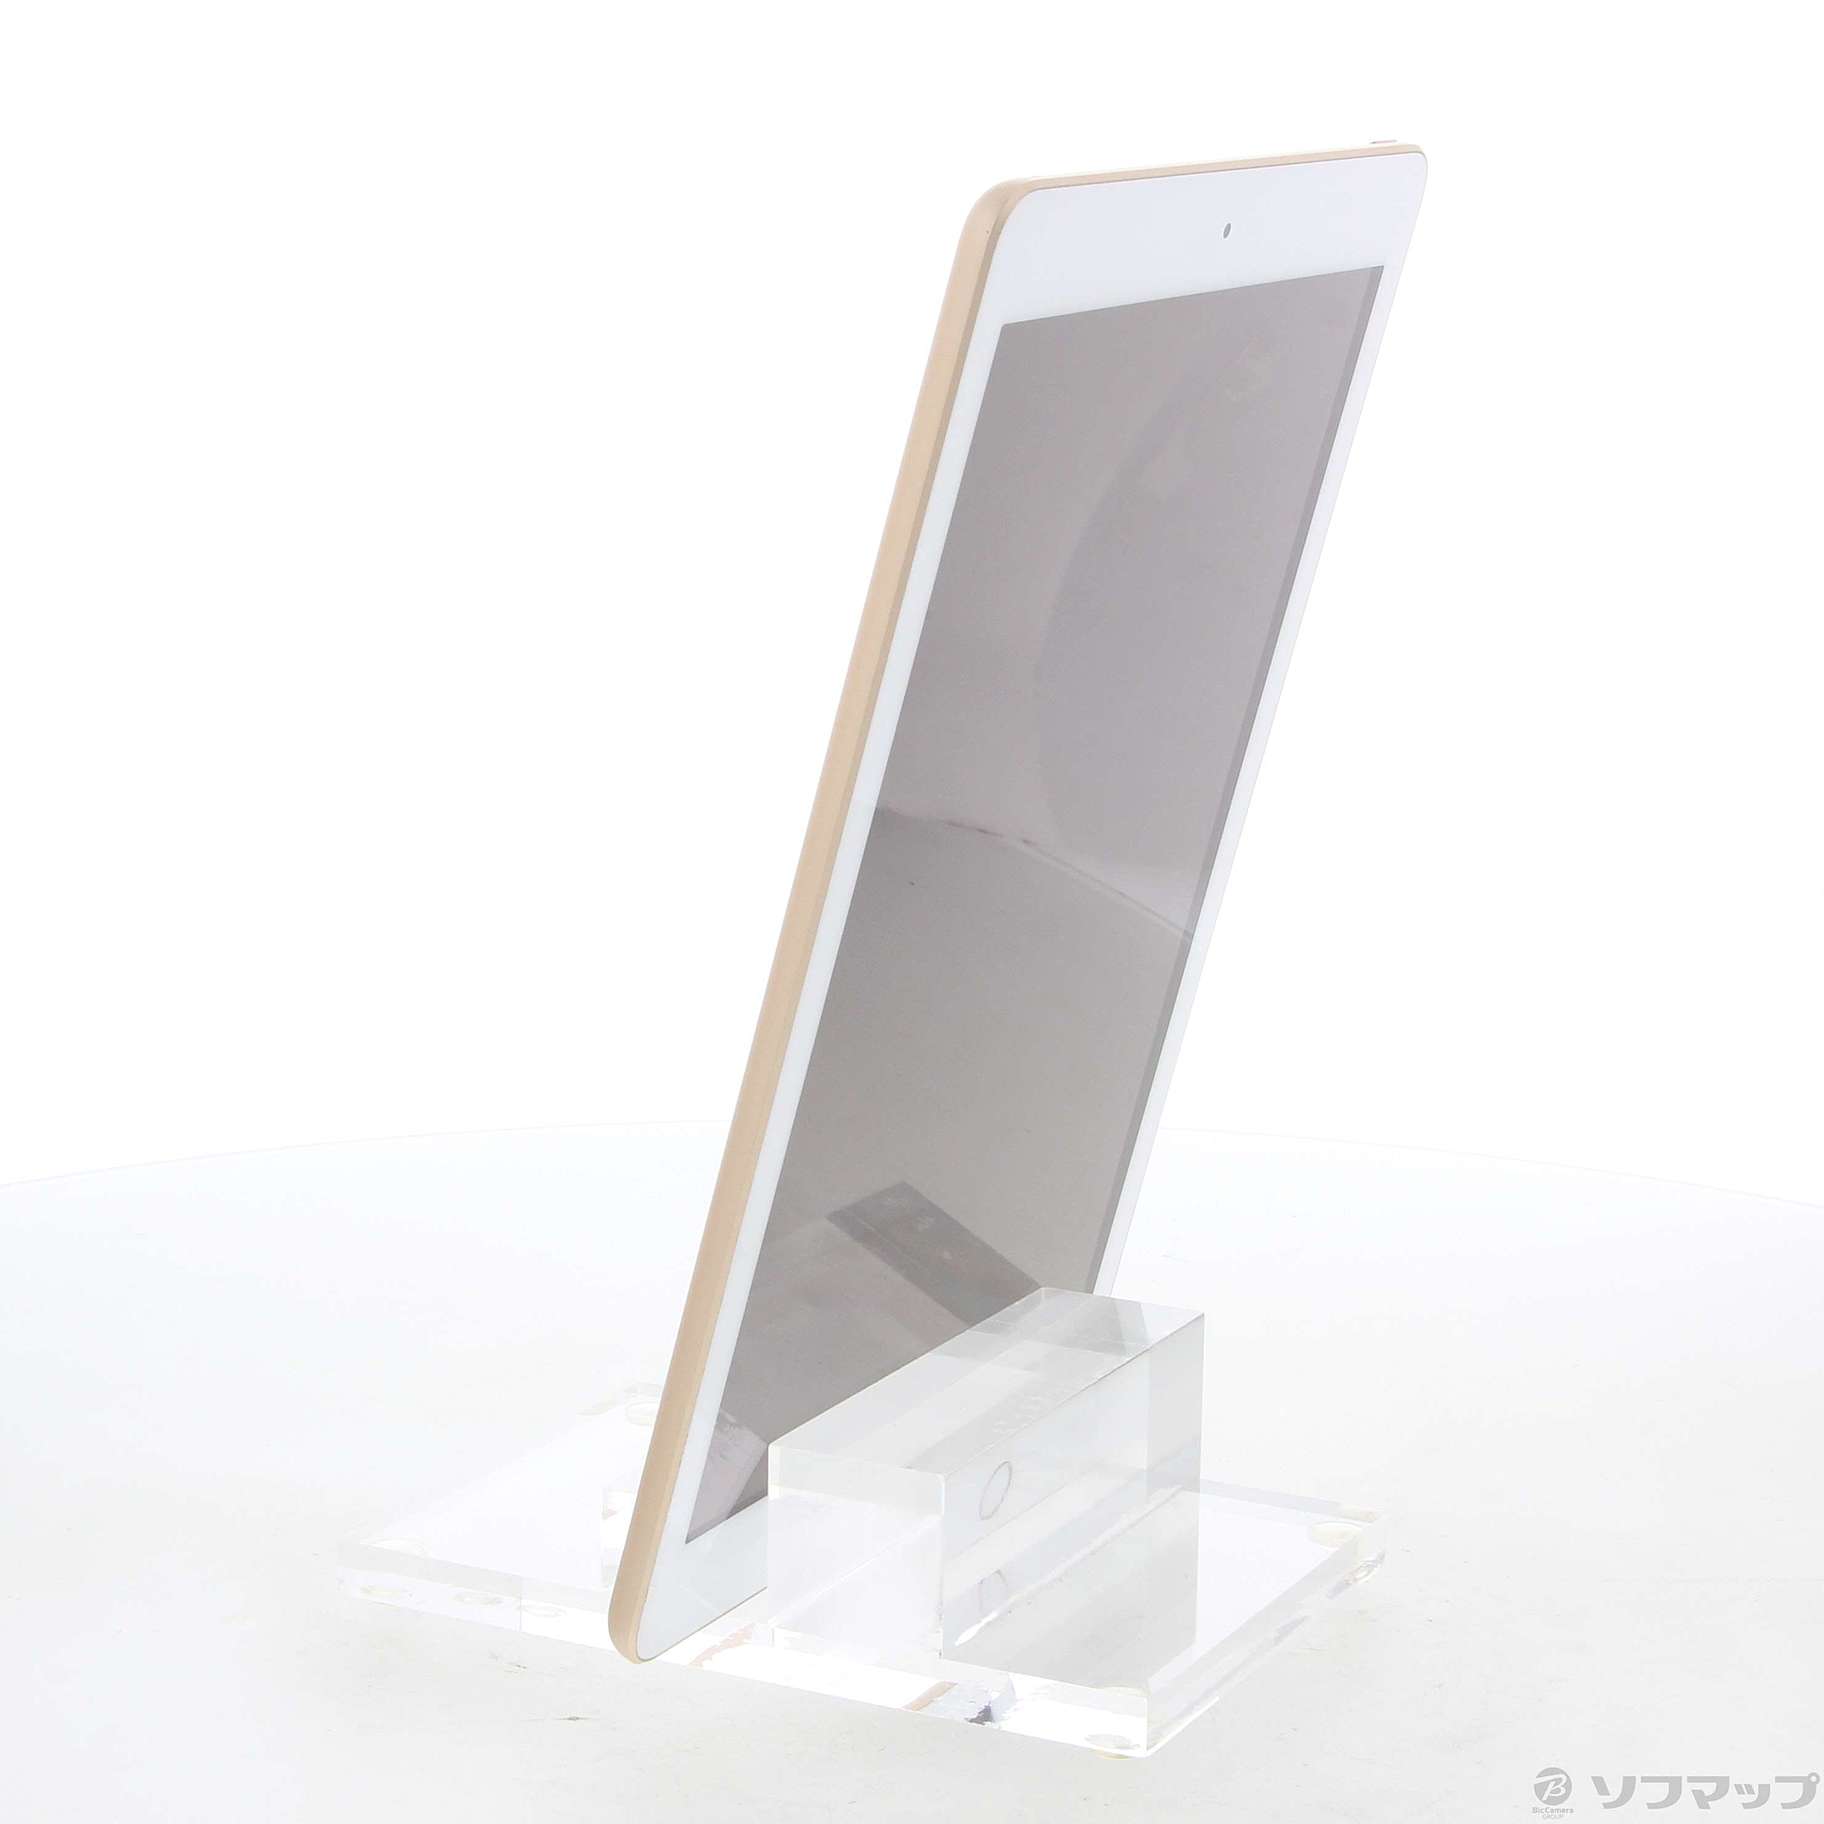 iPad 第5世代 MPGT2J/A ゴールド 32GB Wi-Fiモデル | tradexautomotive.com